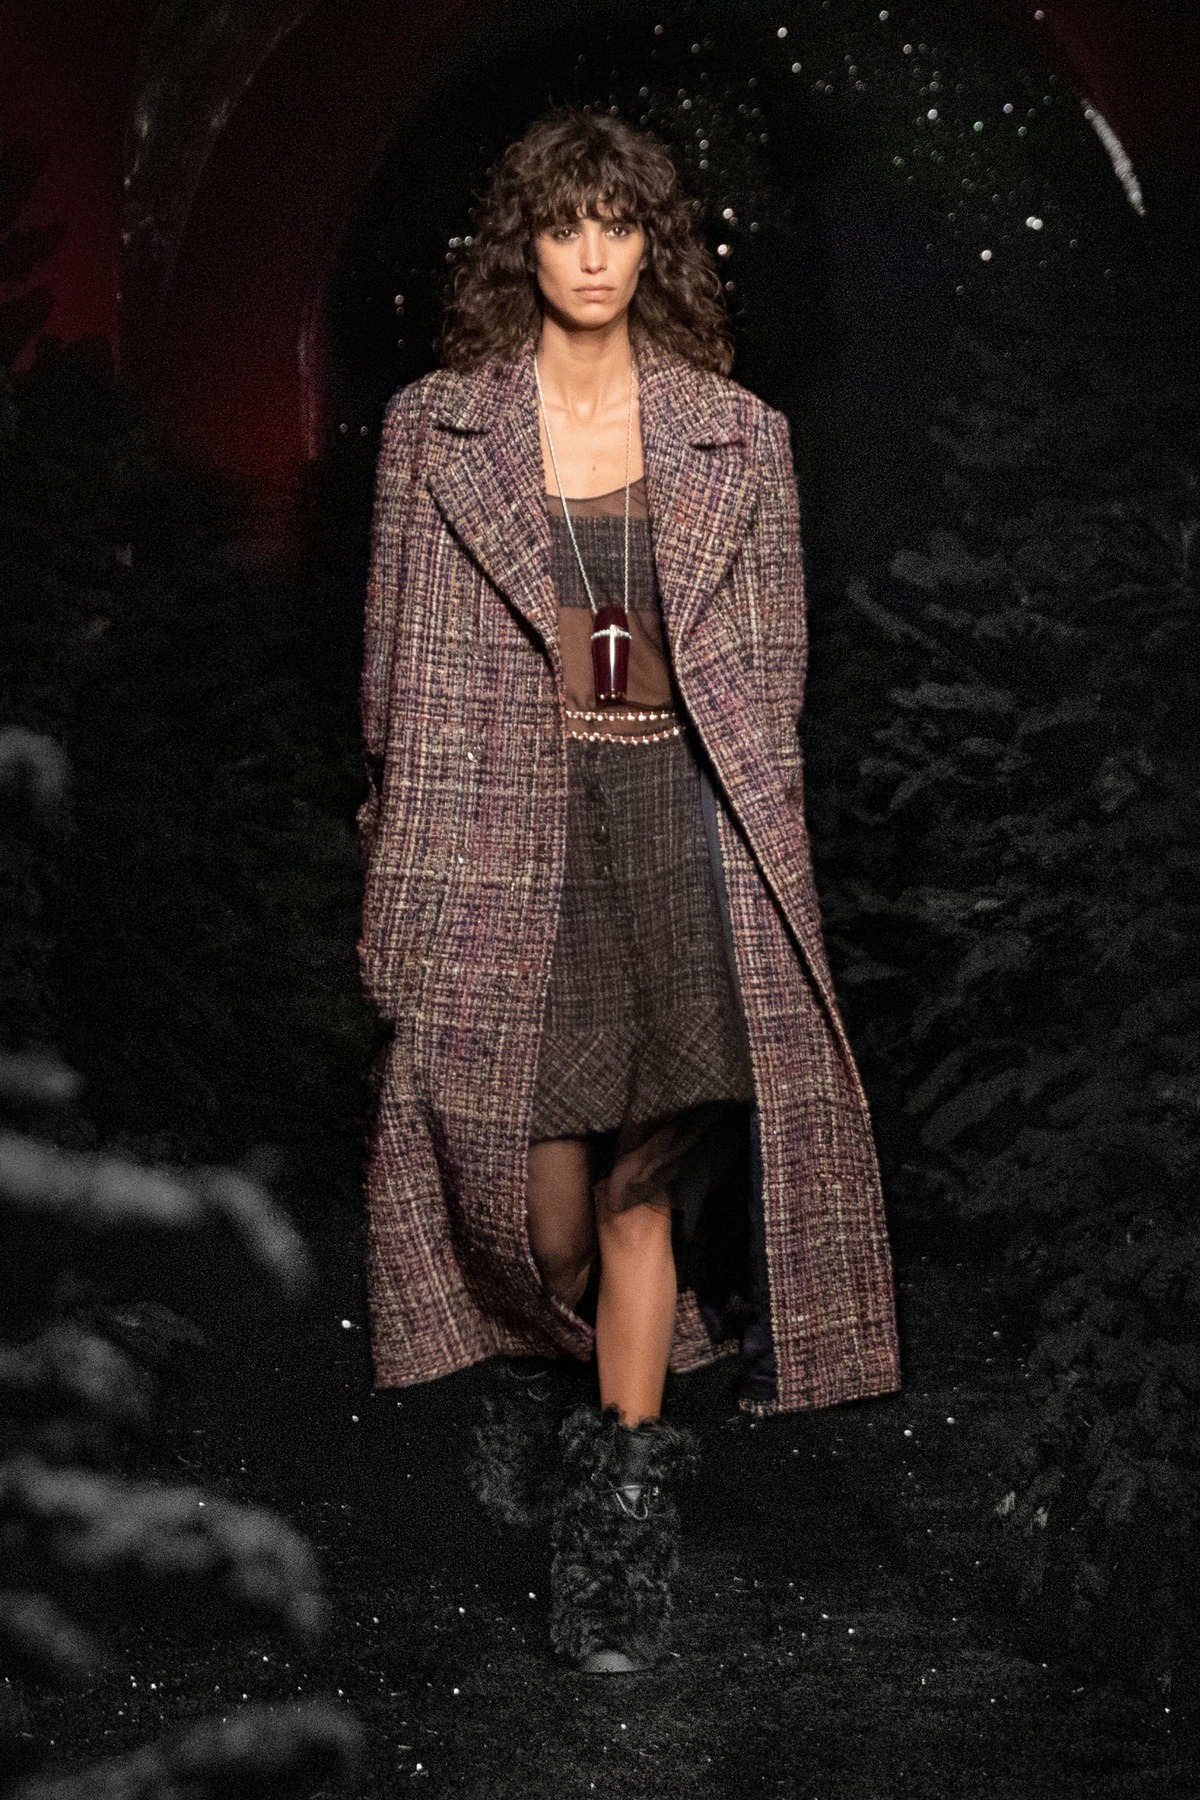 Viard kết hợp mẫu áo khoác vải tweed cứng cáp của Chanel với những trang phục vải voan trong suốt ở bên trong. Điếm nhấn của bộ trang phục là đôi boots lông cao cổ - một sáng tạo hoàn toàn khác biệt so với những mùa cũ.